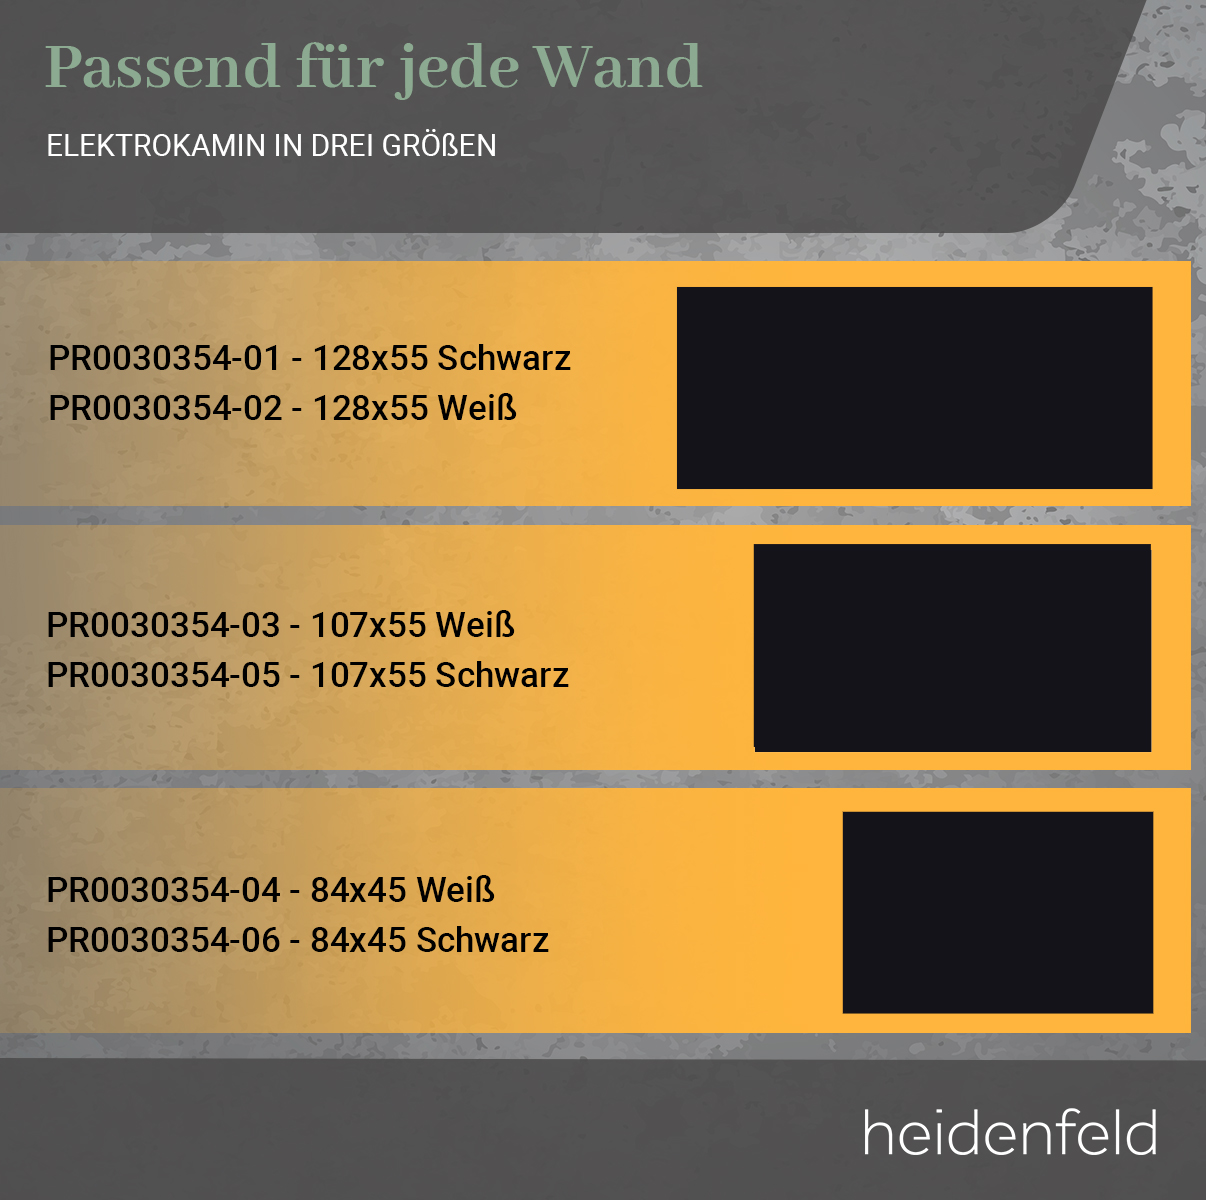 107.0 HEIDENFELD HF-WK300 Watt) 55.0 x (1500 cm Wandkamin Elektrokamin